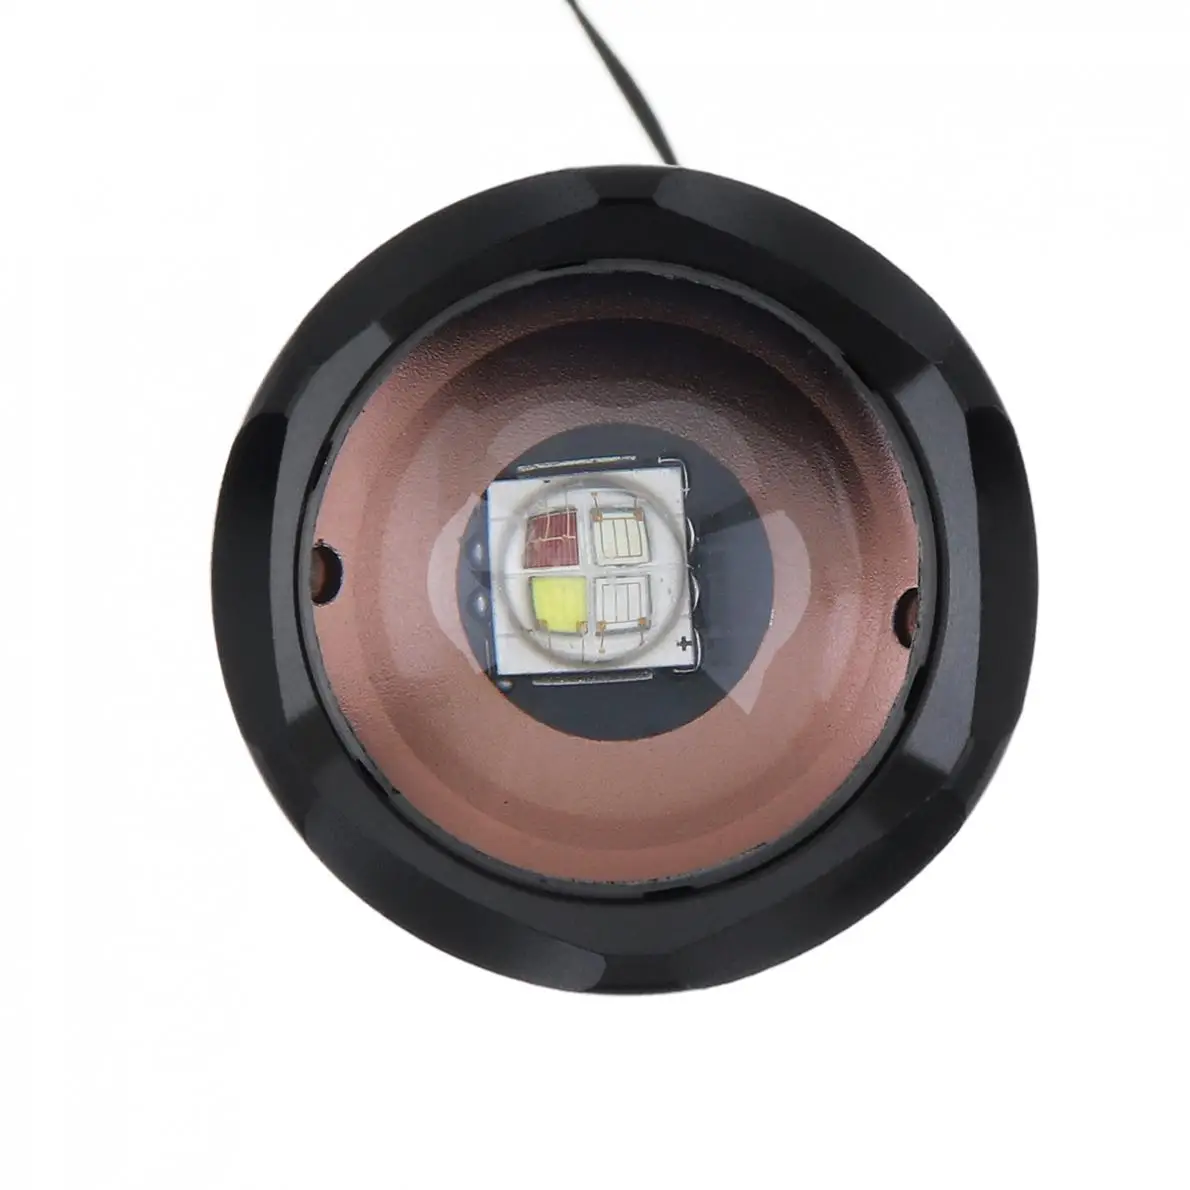 X004 4 Barve LED Svetilka Nepremočljiva Zoomable za Kampiranje / Pohodništvo / Lov / Ribolov / Backpacking